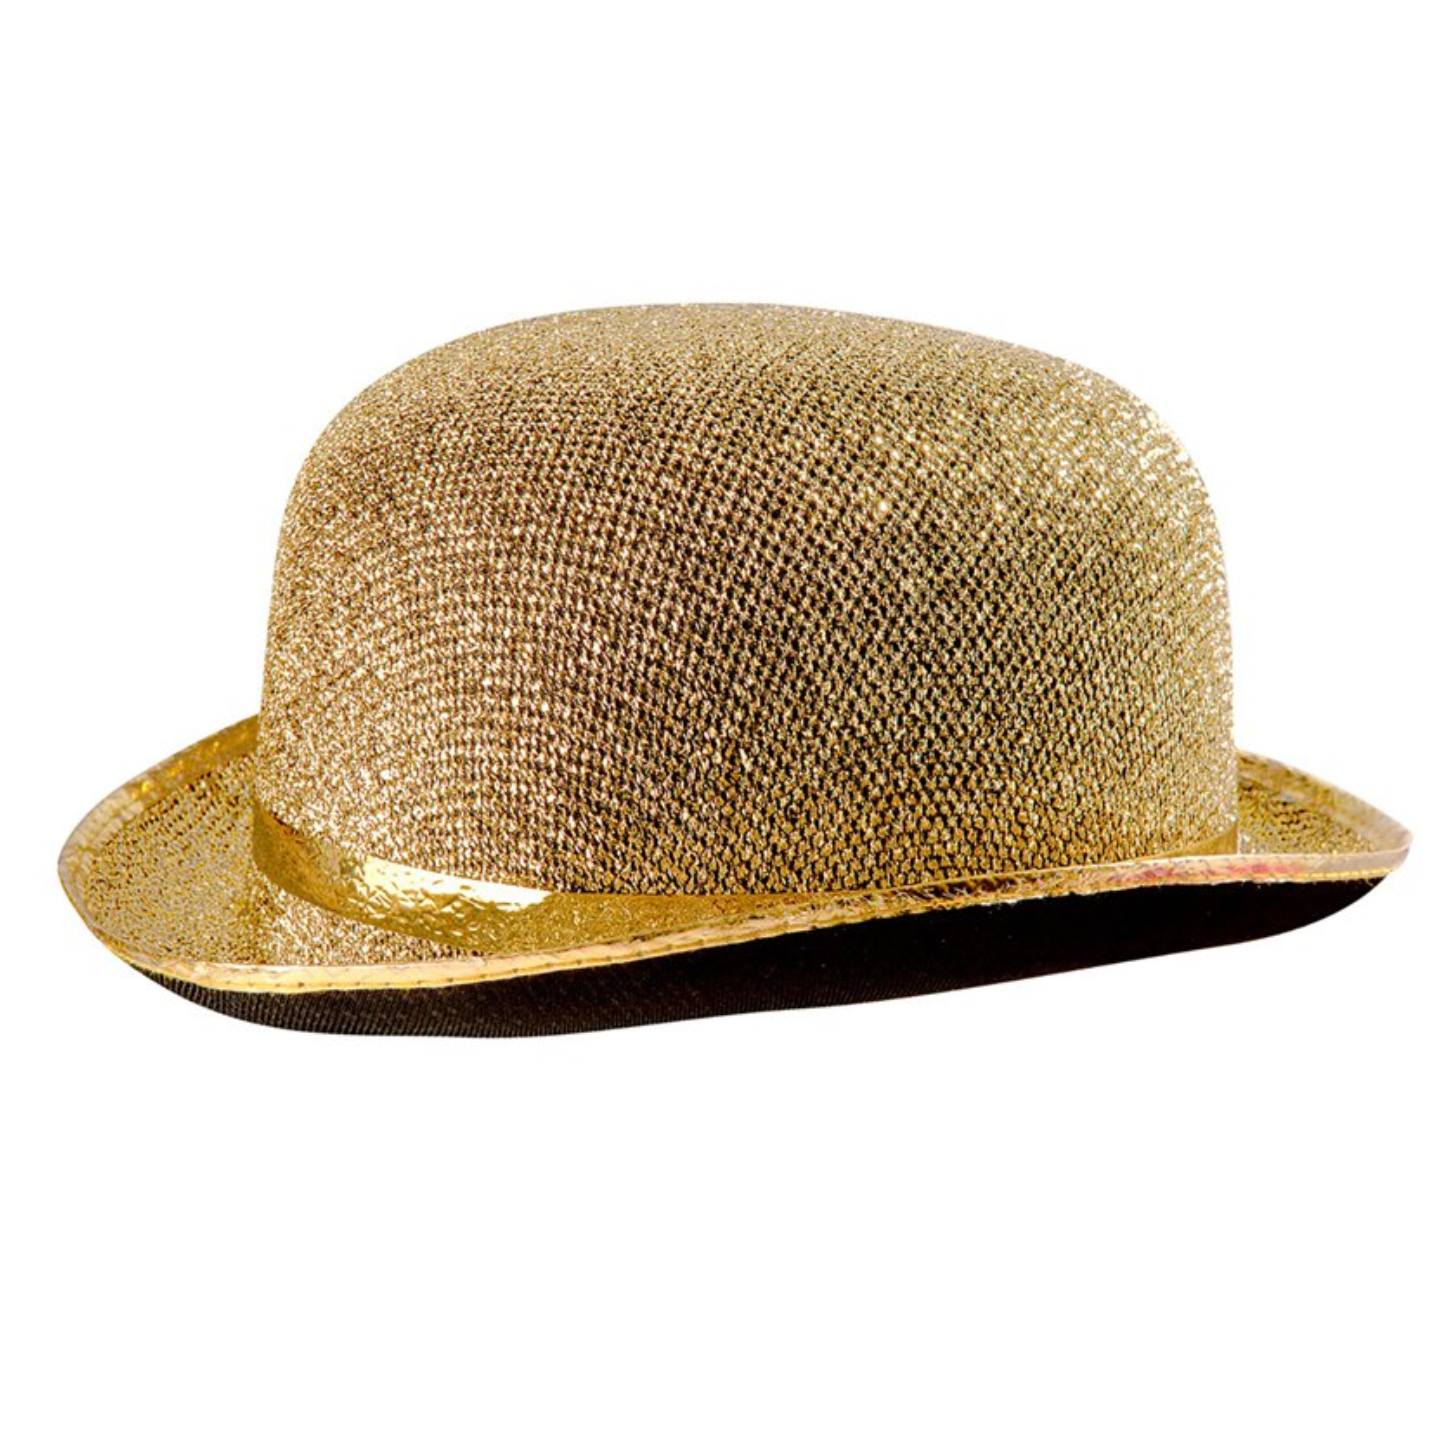 HIRE - Gold Sparkle Bowler Hats